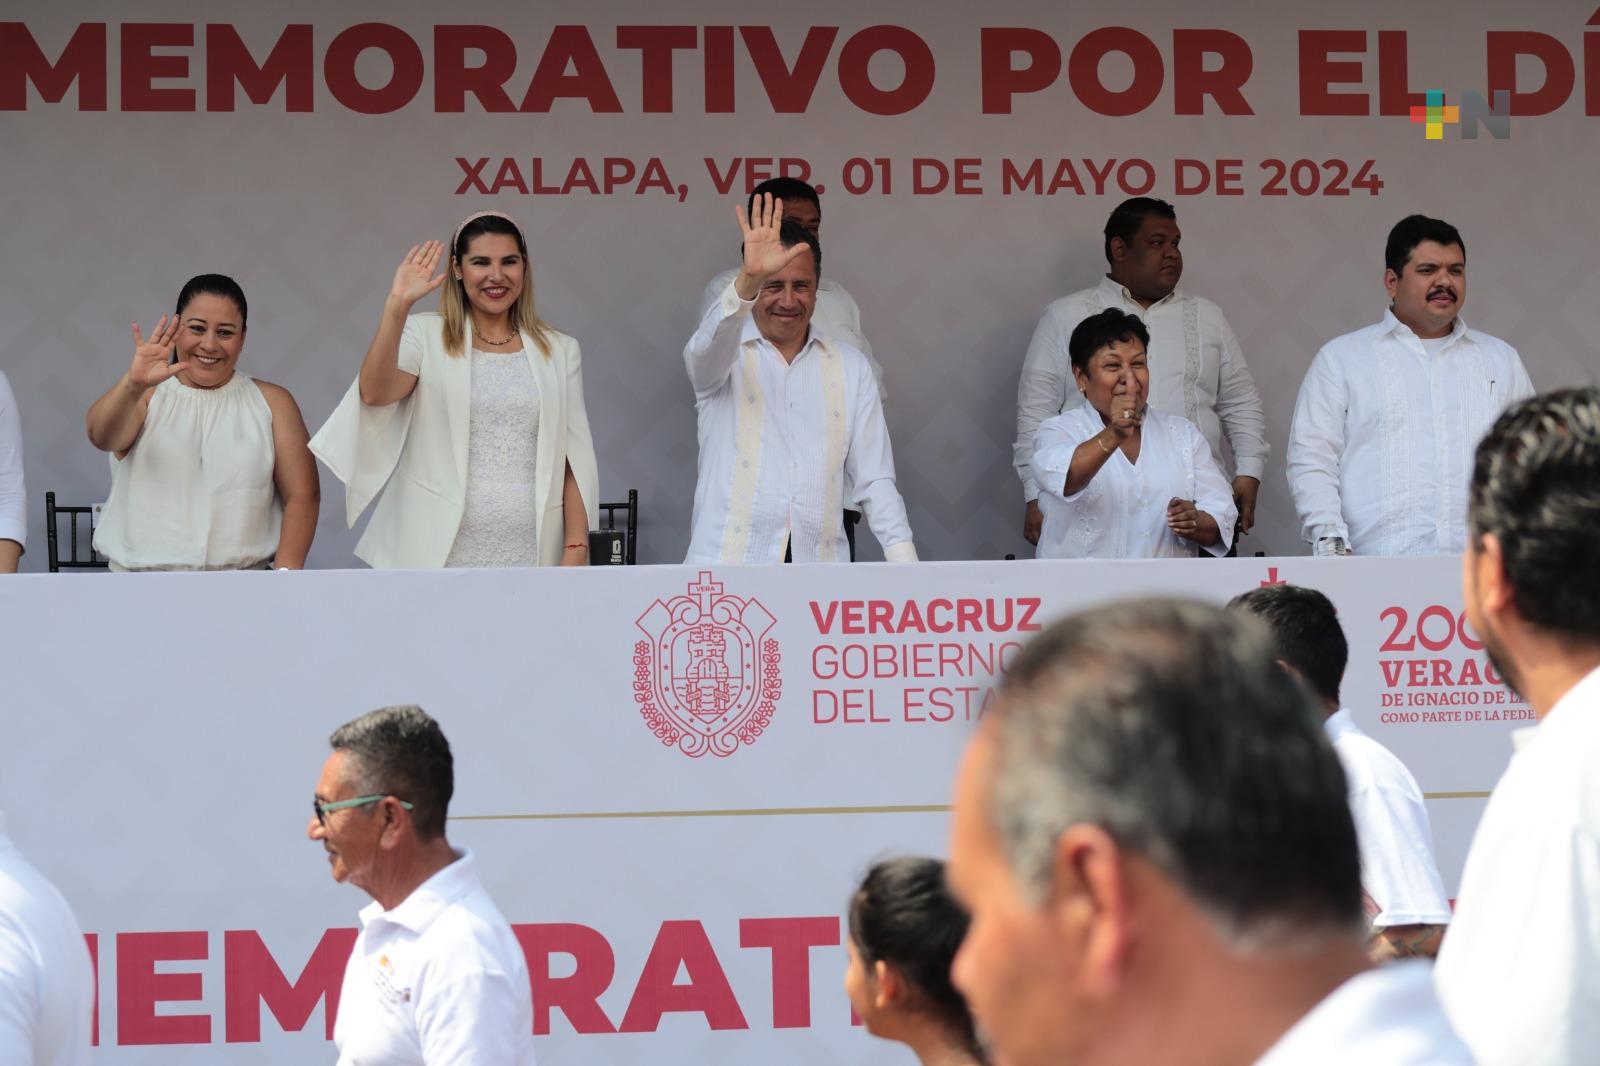 Señala Gobernador estabilidad laboral en Veracruz; IPE recuperó operatividad y salud financiera